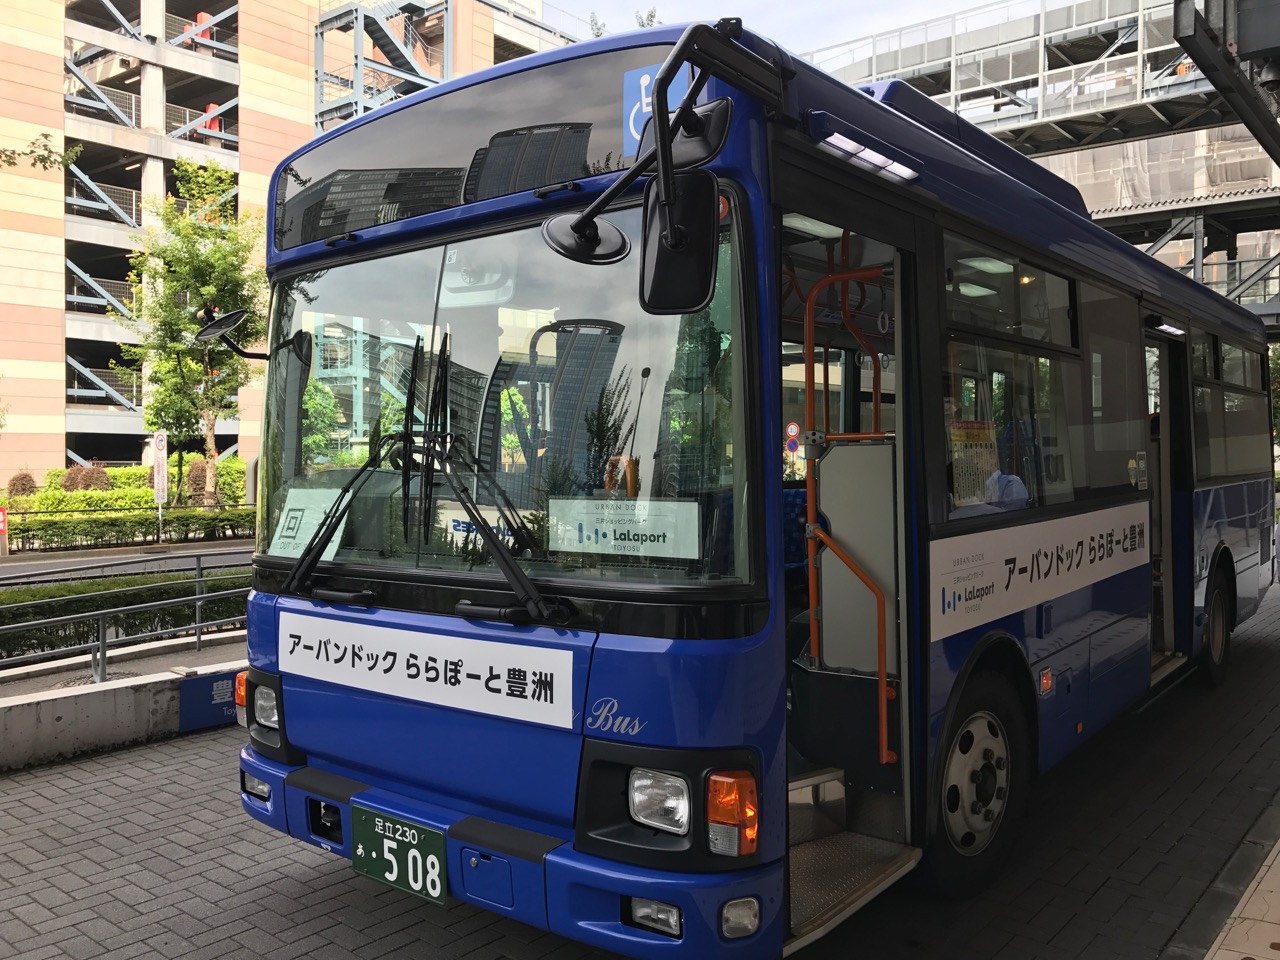 豊洲市場〜ららぽーと、無料シャトルバスが運行！土曜マルシェの開催日限定で9往復・12便